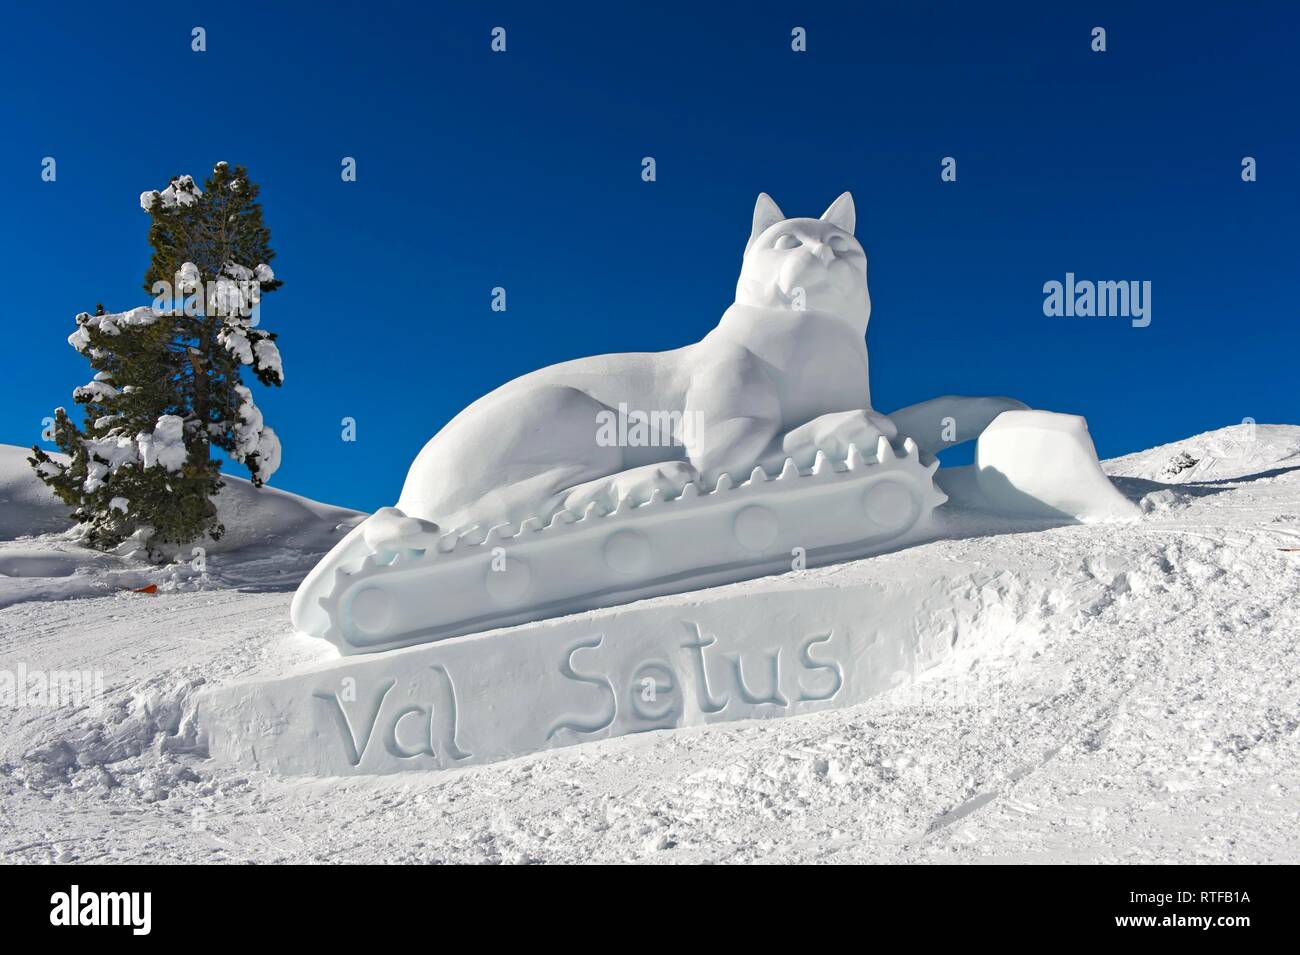 Sculpture de Glace, la figure de chat, chat neige Val Setus, Corvara, Badia, le Tyrol du Sud, Italie Banque D'Images